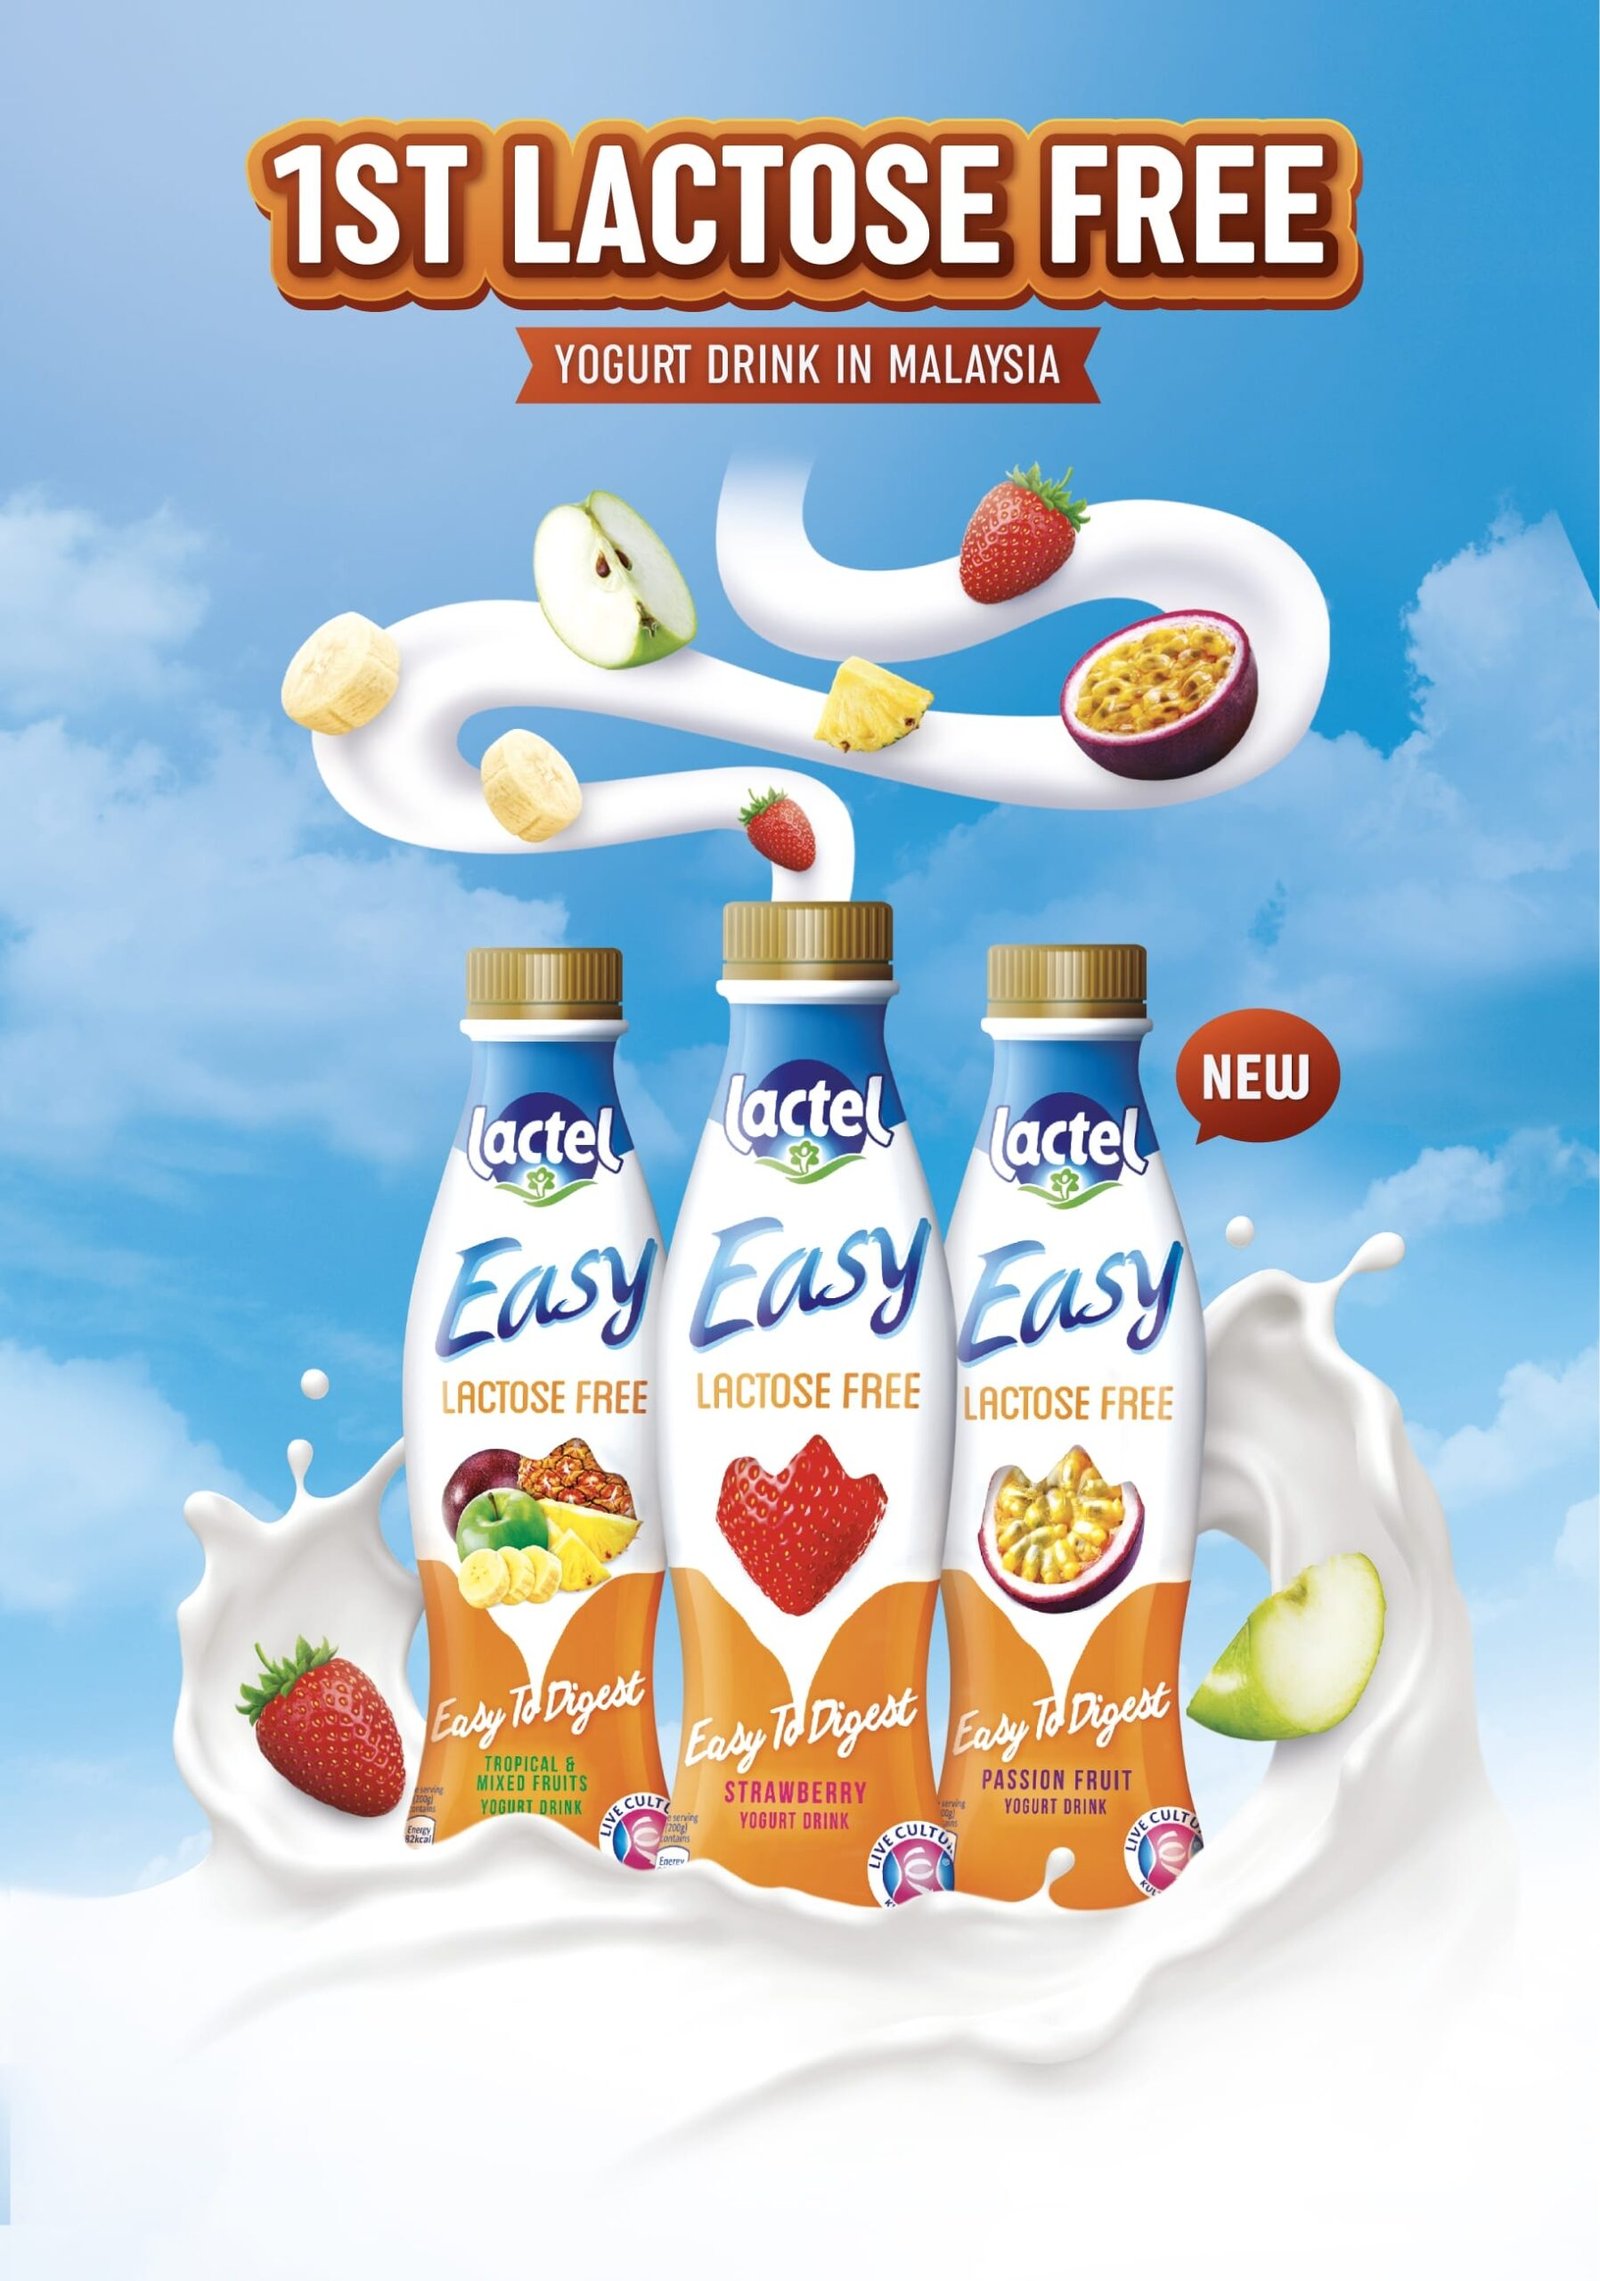 1st Lactose Free Yogurt Drink in Malaysia